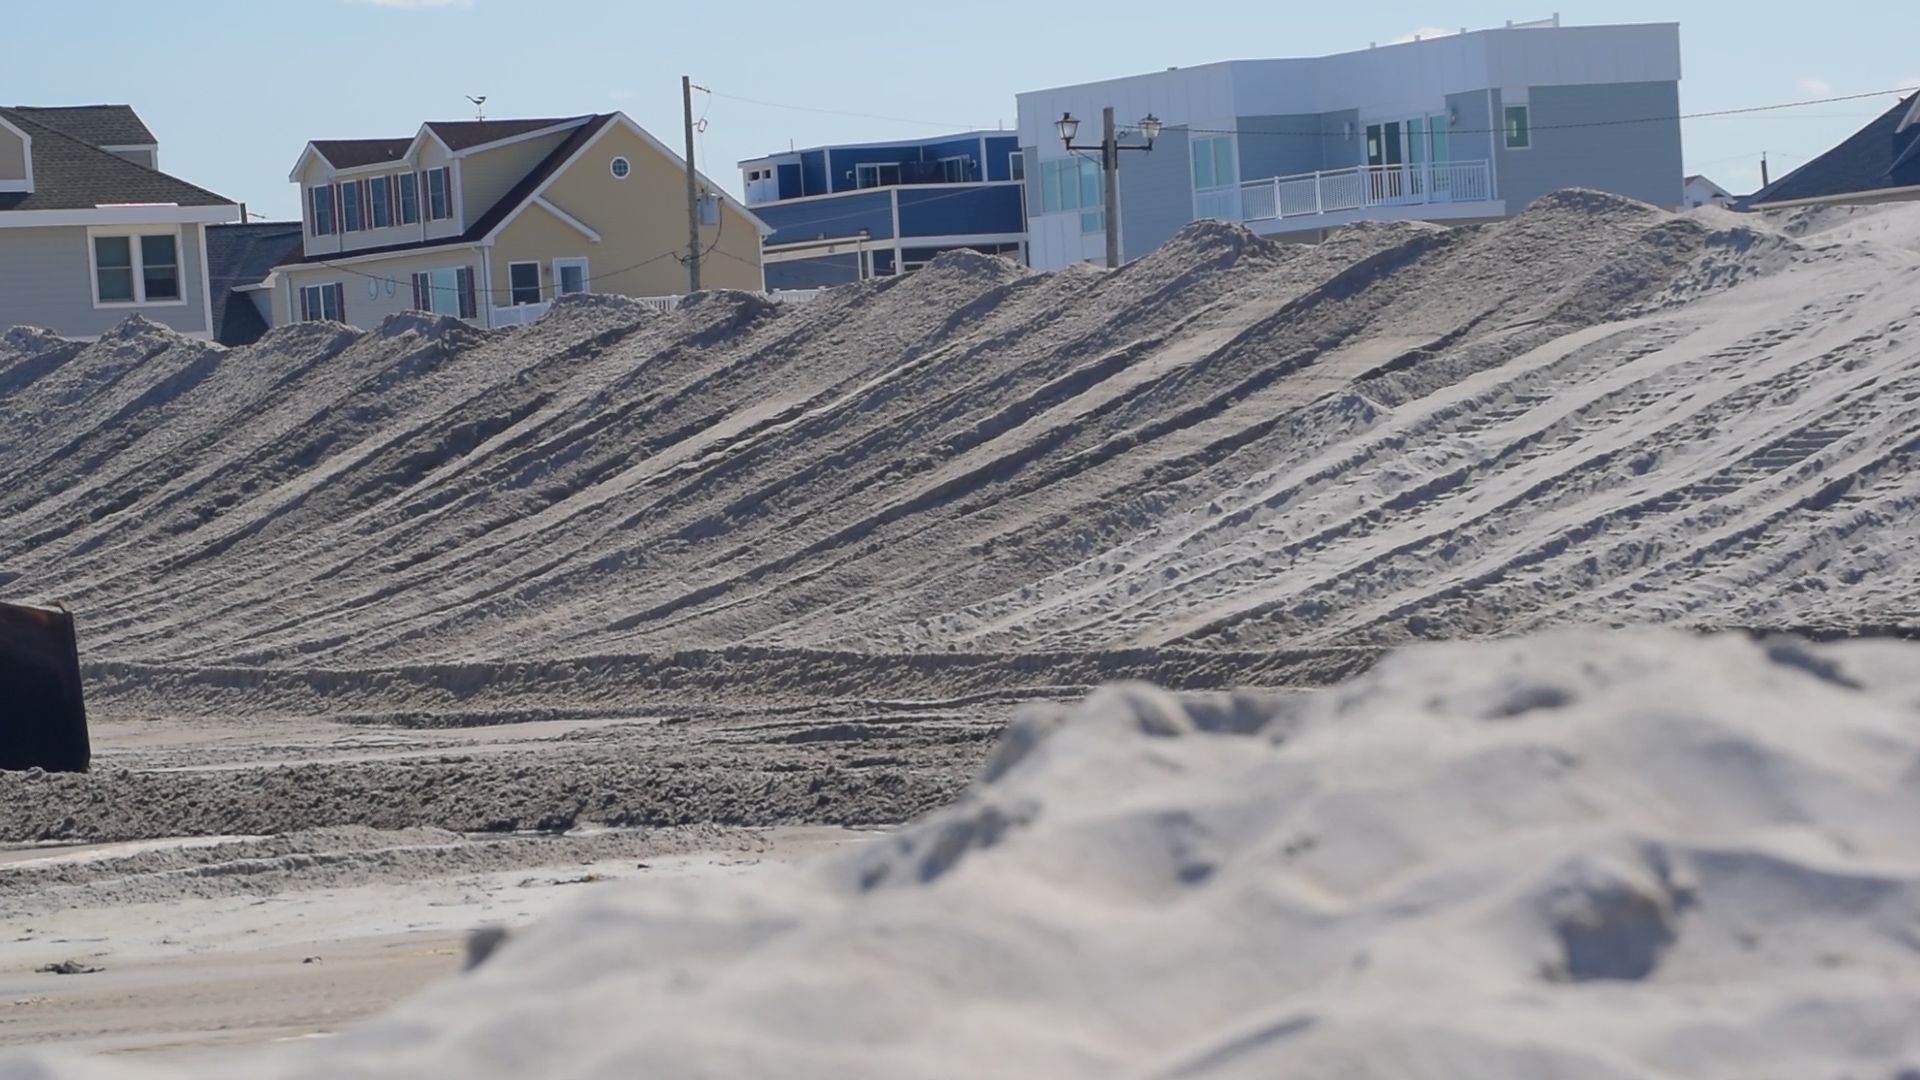 Dunes being built in Ortley Beach, N.J., Aug. 2018. (Photo: Daniel Nee)